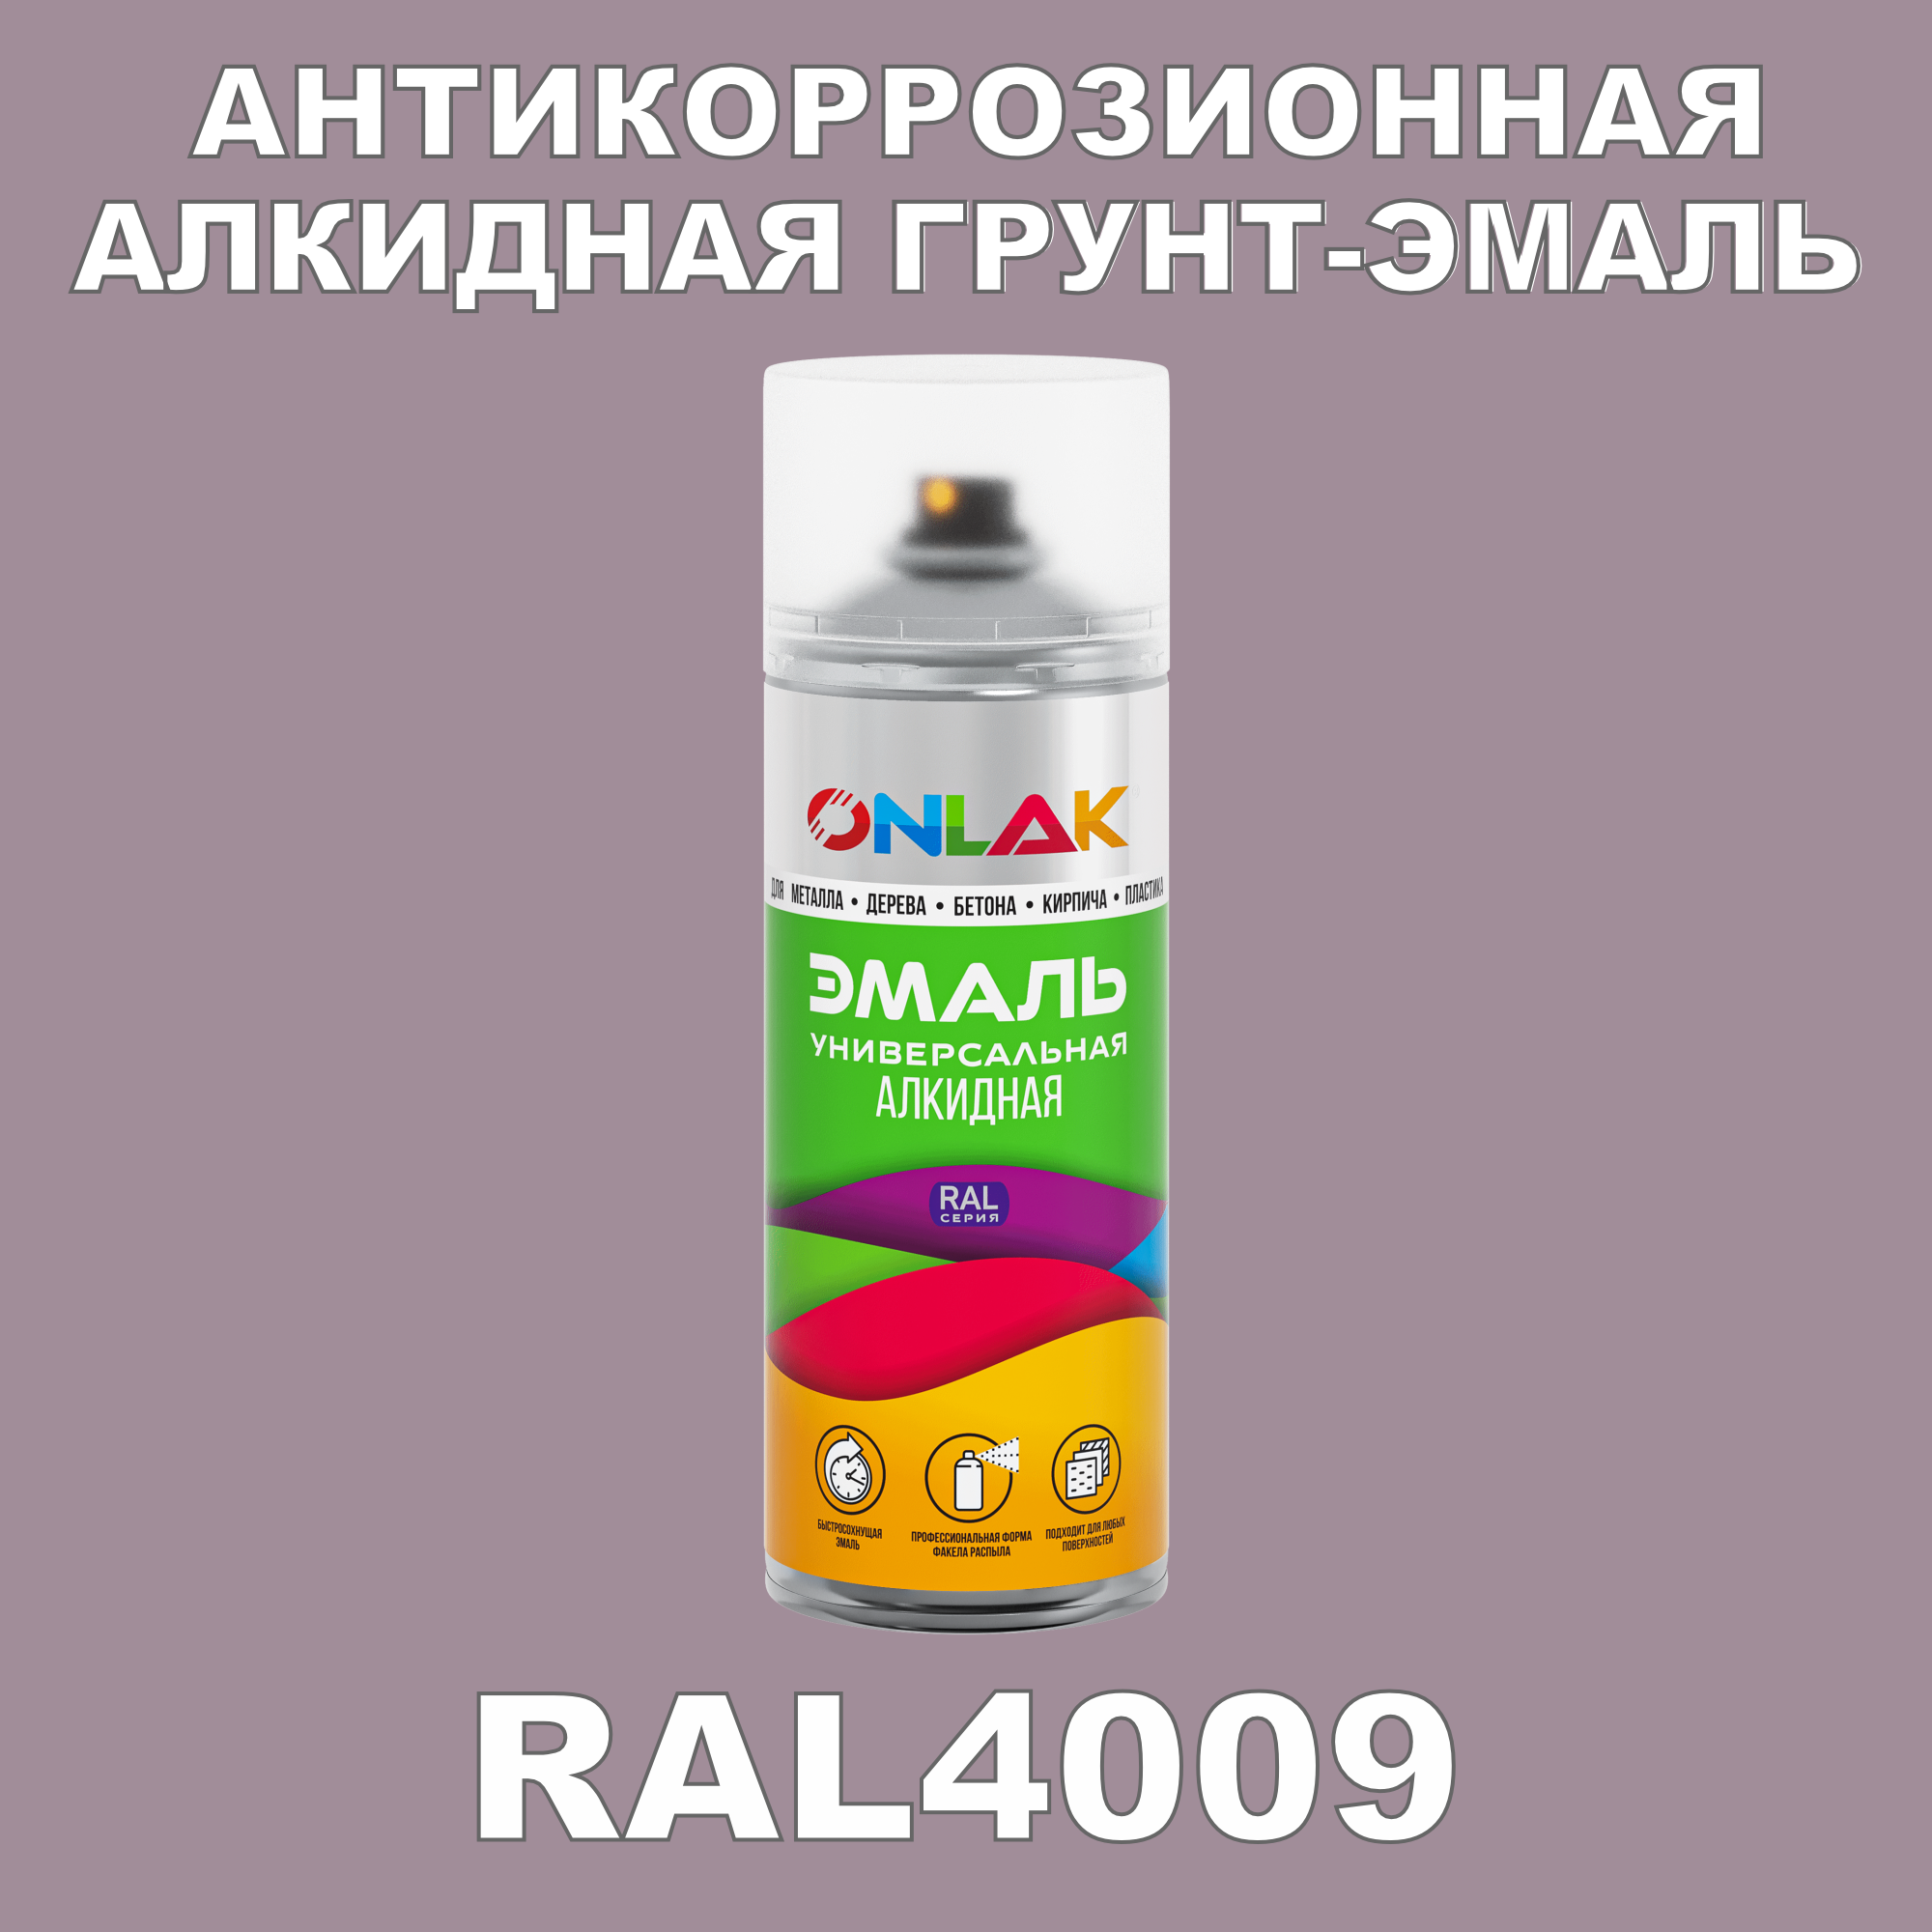 Антикоррозионная грунт-эмаль ONLAK RAL 4009,фиолетовый,593 мл artuniq color violet ной грунт для аквариума фиолетовый 3 кг